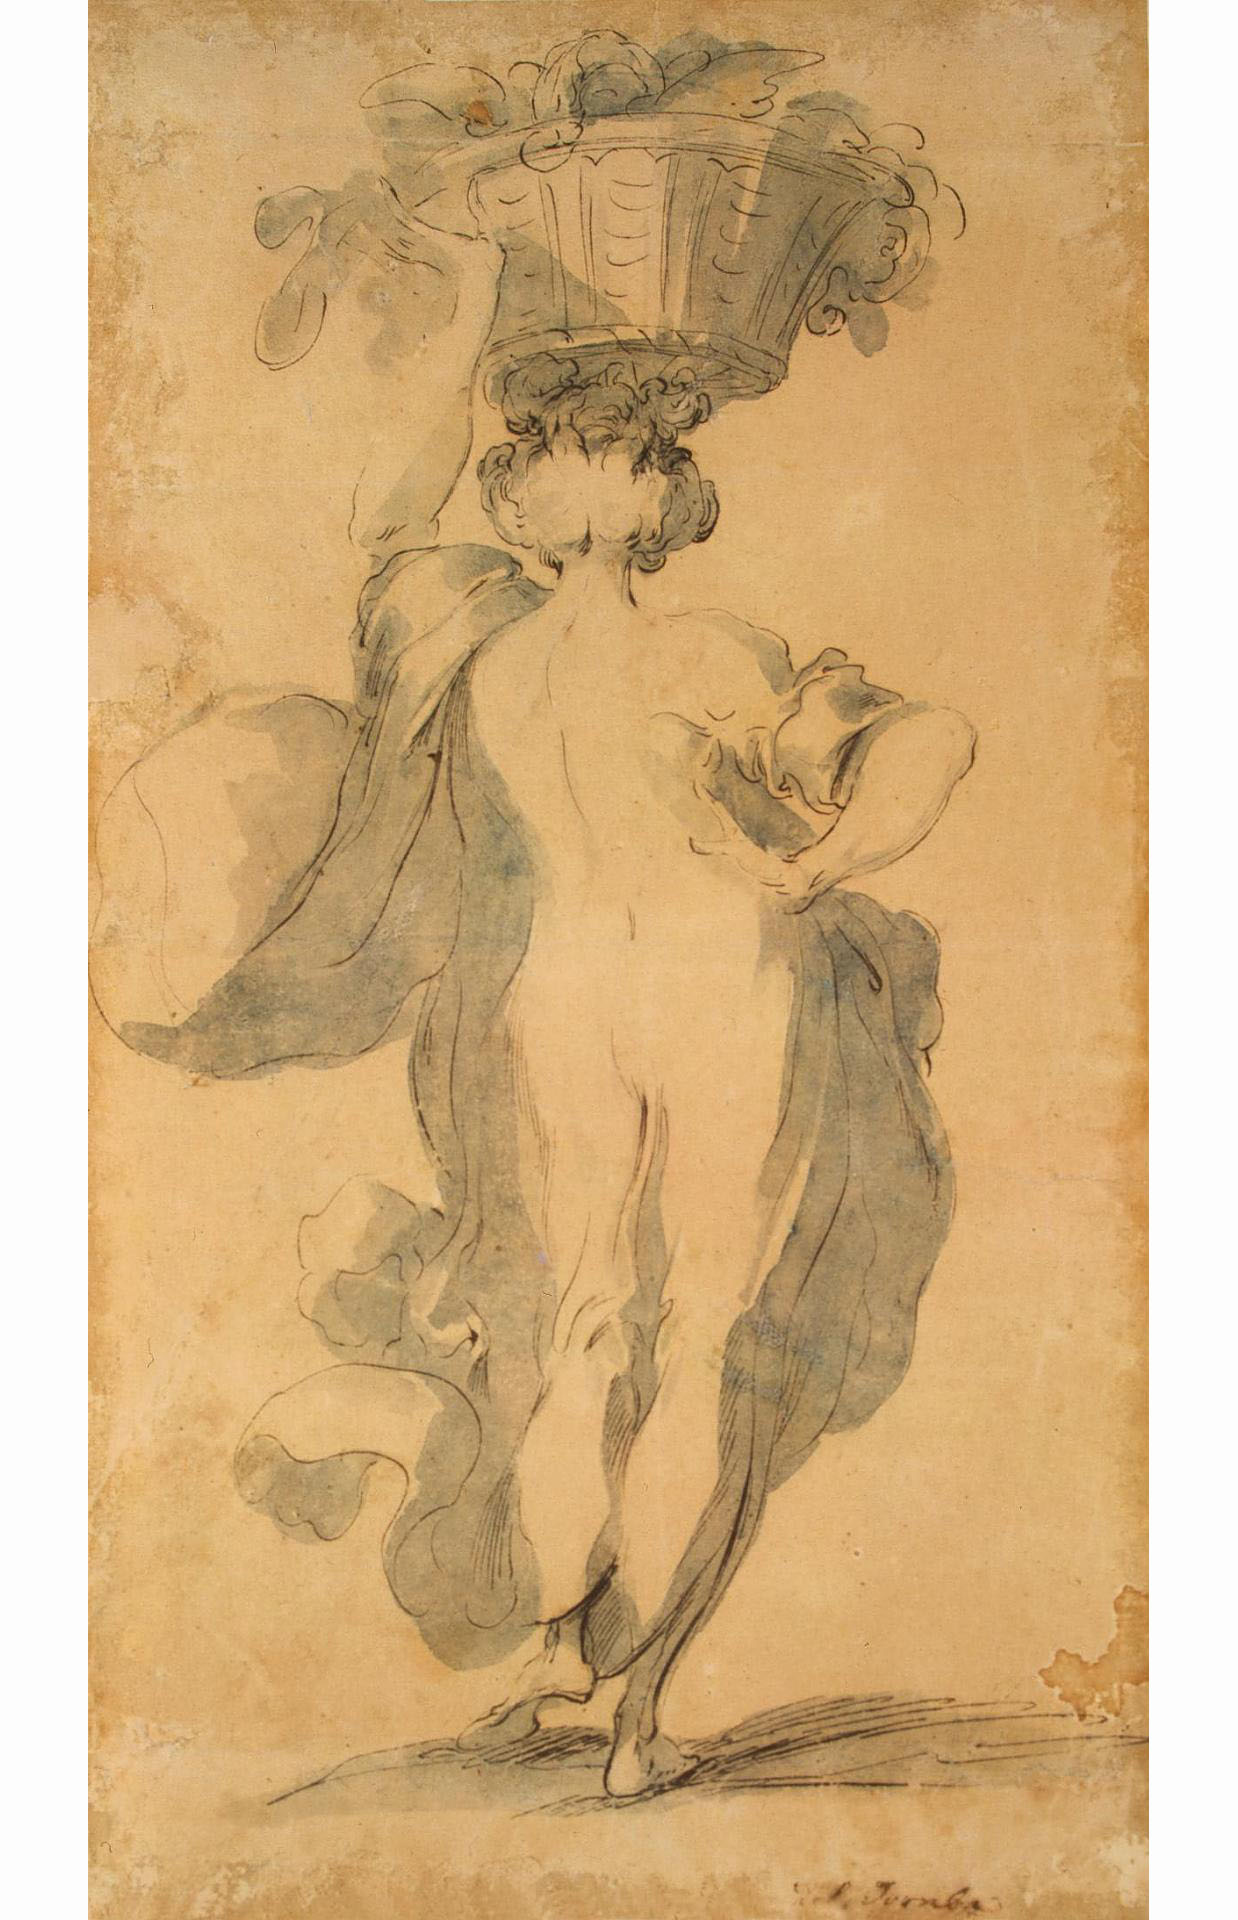 Жак Шарль де Белланж. "Женщина с корзиной цветов на голове". После 1610.